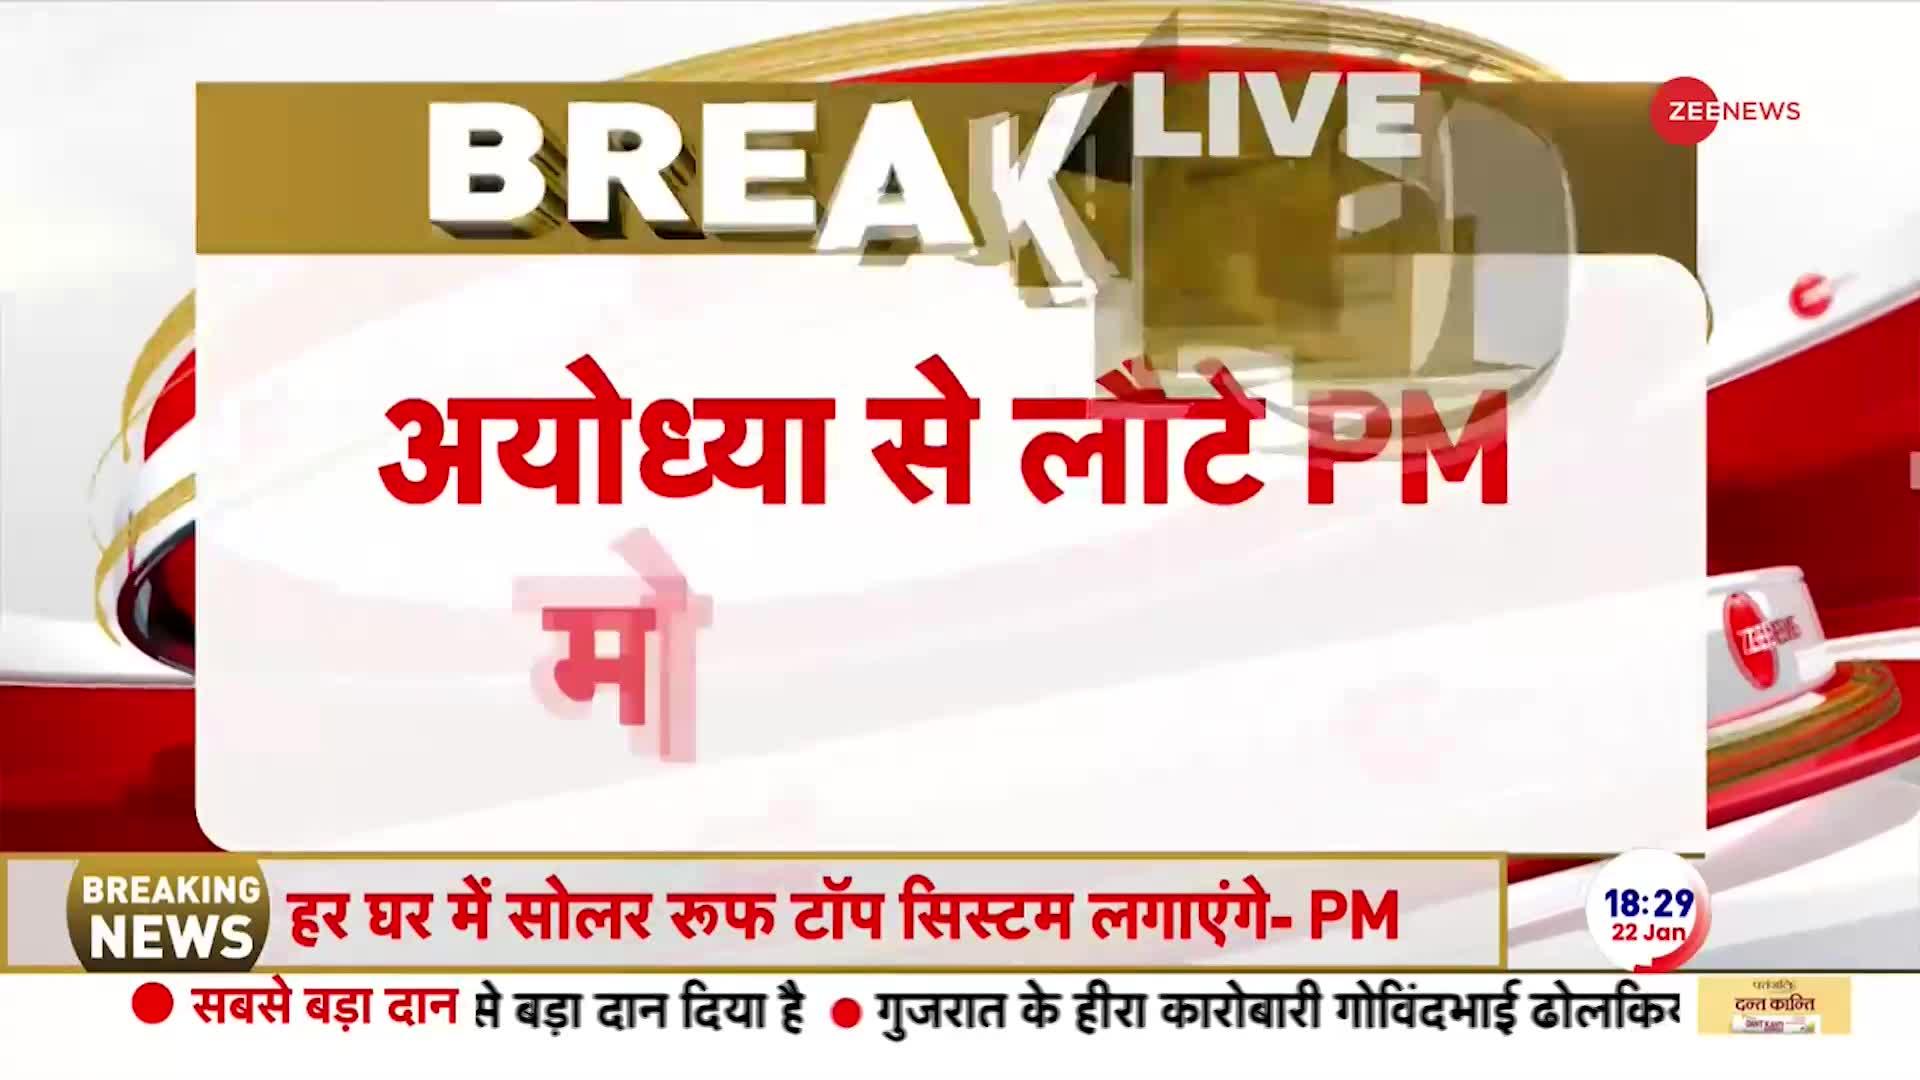 Ayodhya Ram Mandir Inauguration: हर घर पर सोलर रूफ टॉप सिस्टम लगाएंगे - PM मोदी